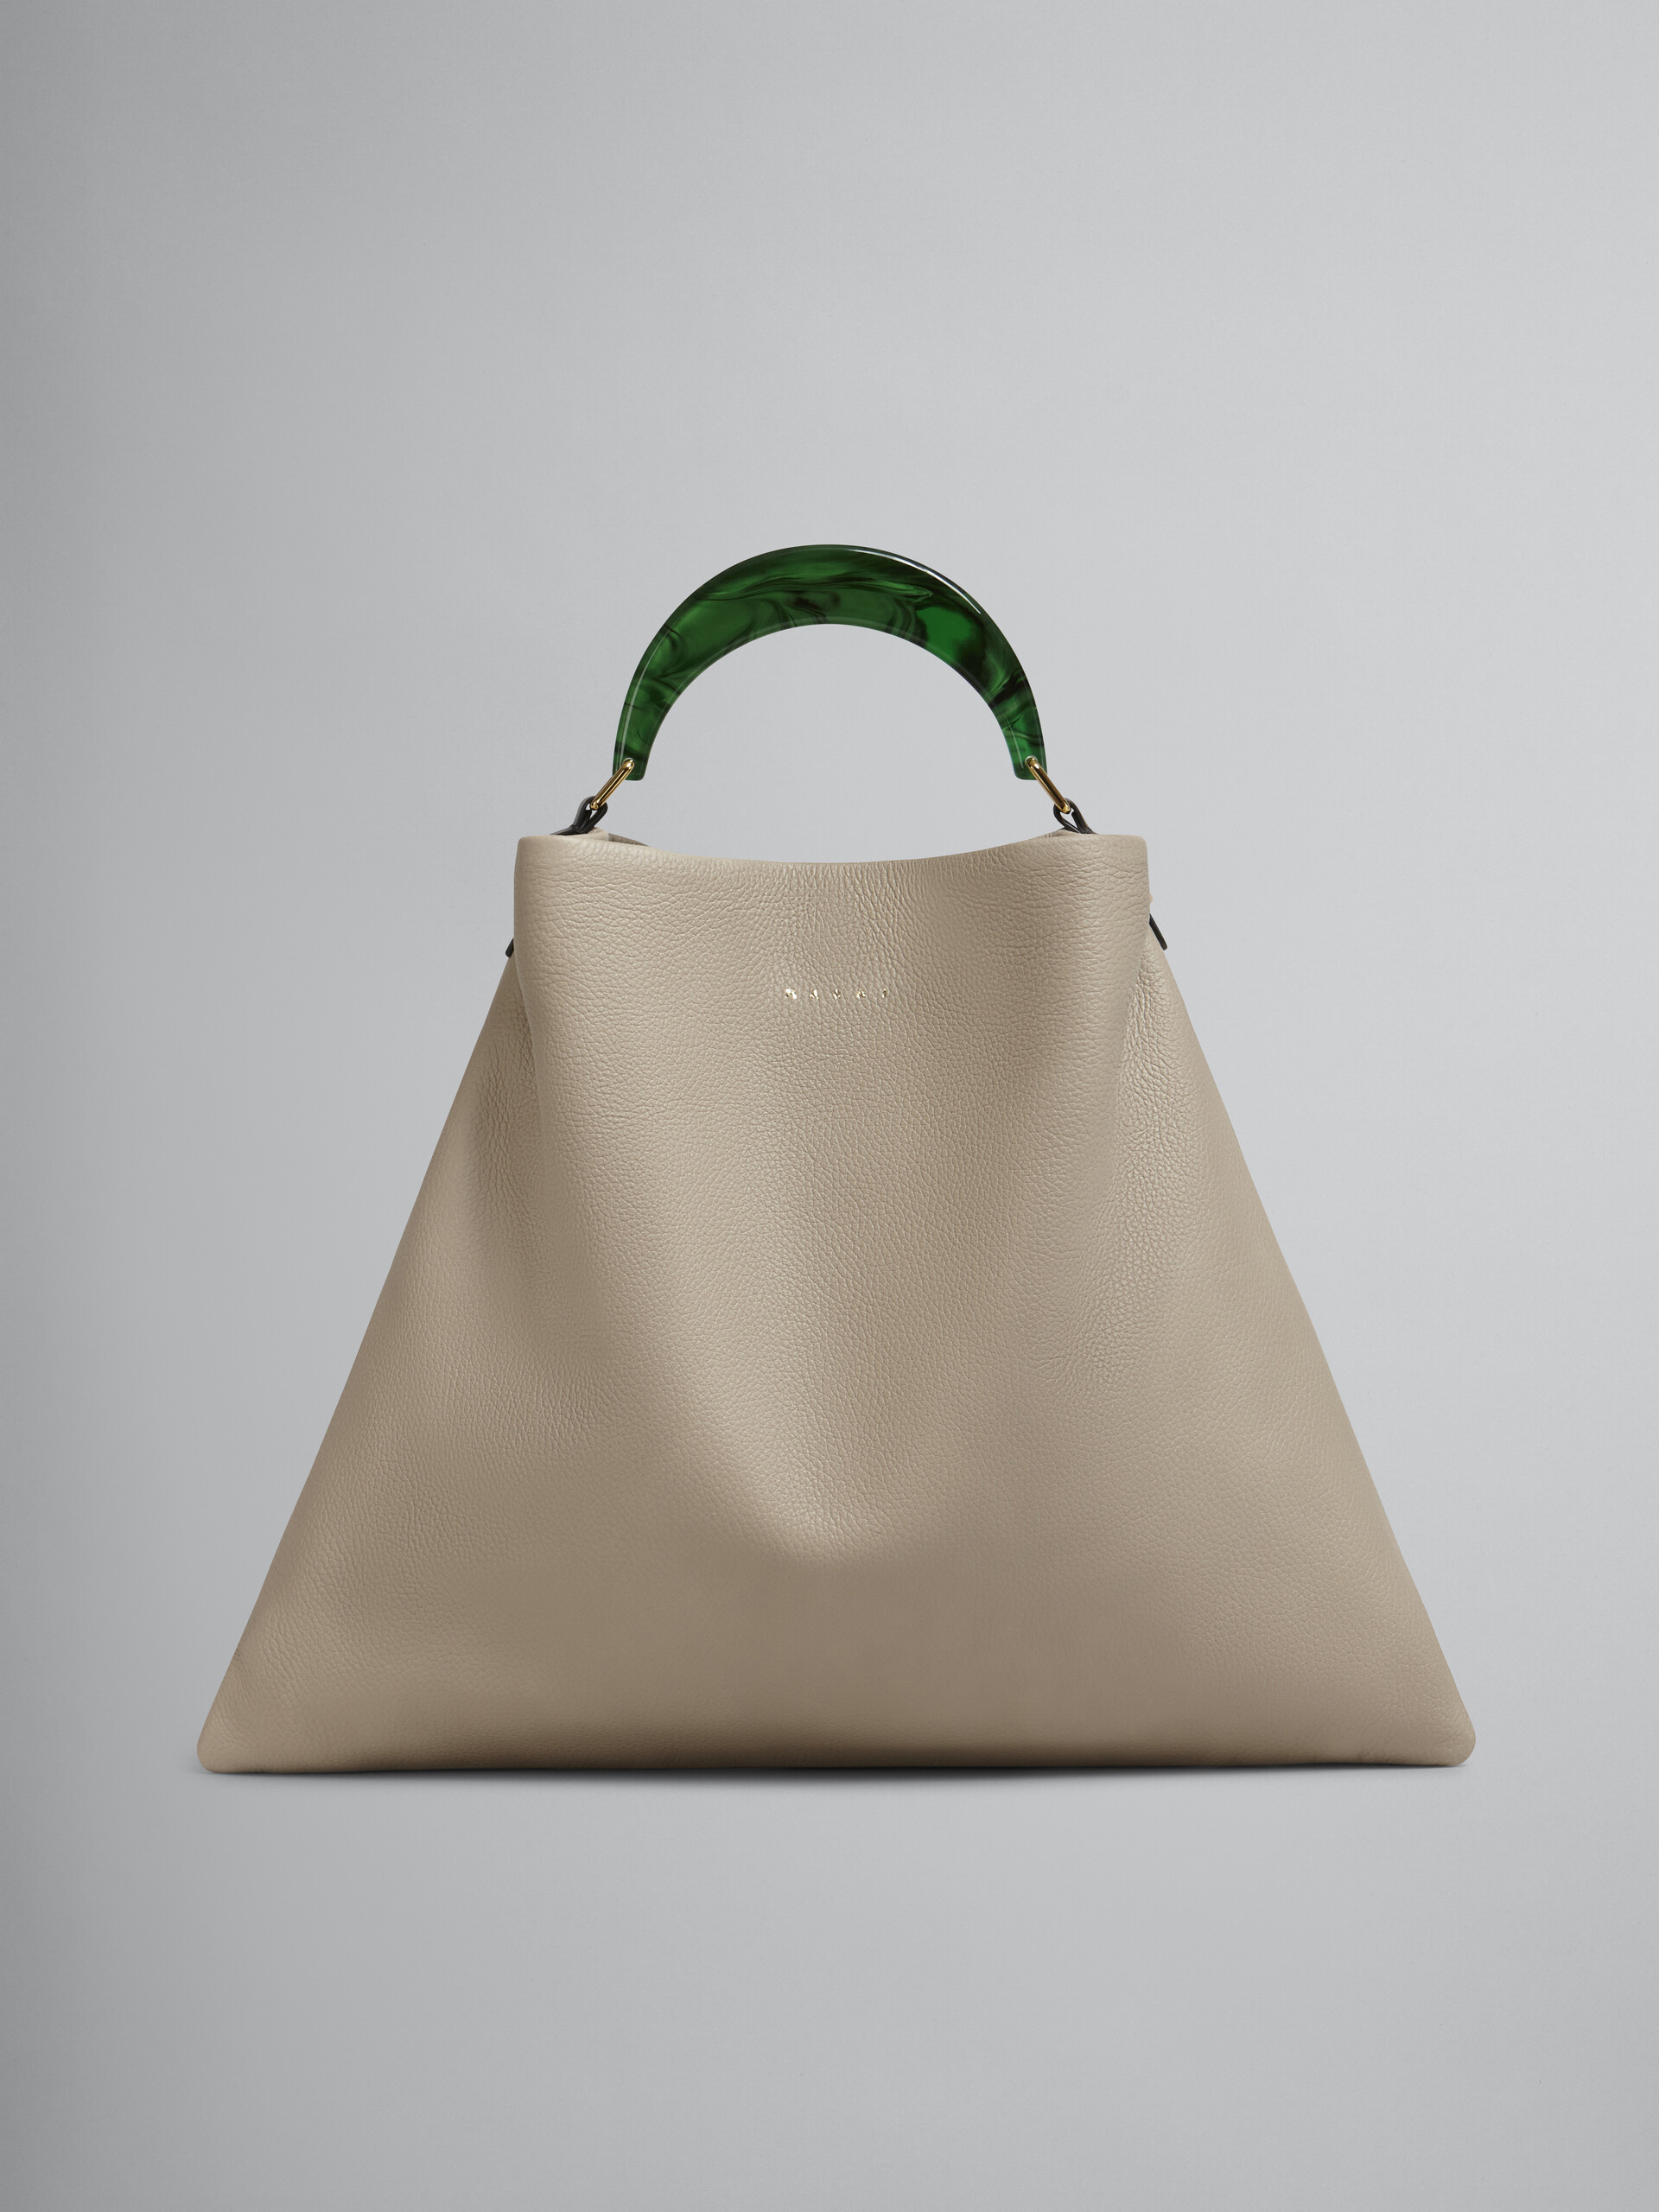 Venice medium bag in beige leather - Shoulder Bag - Image 1